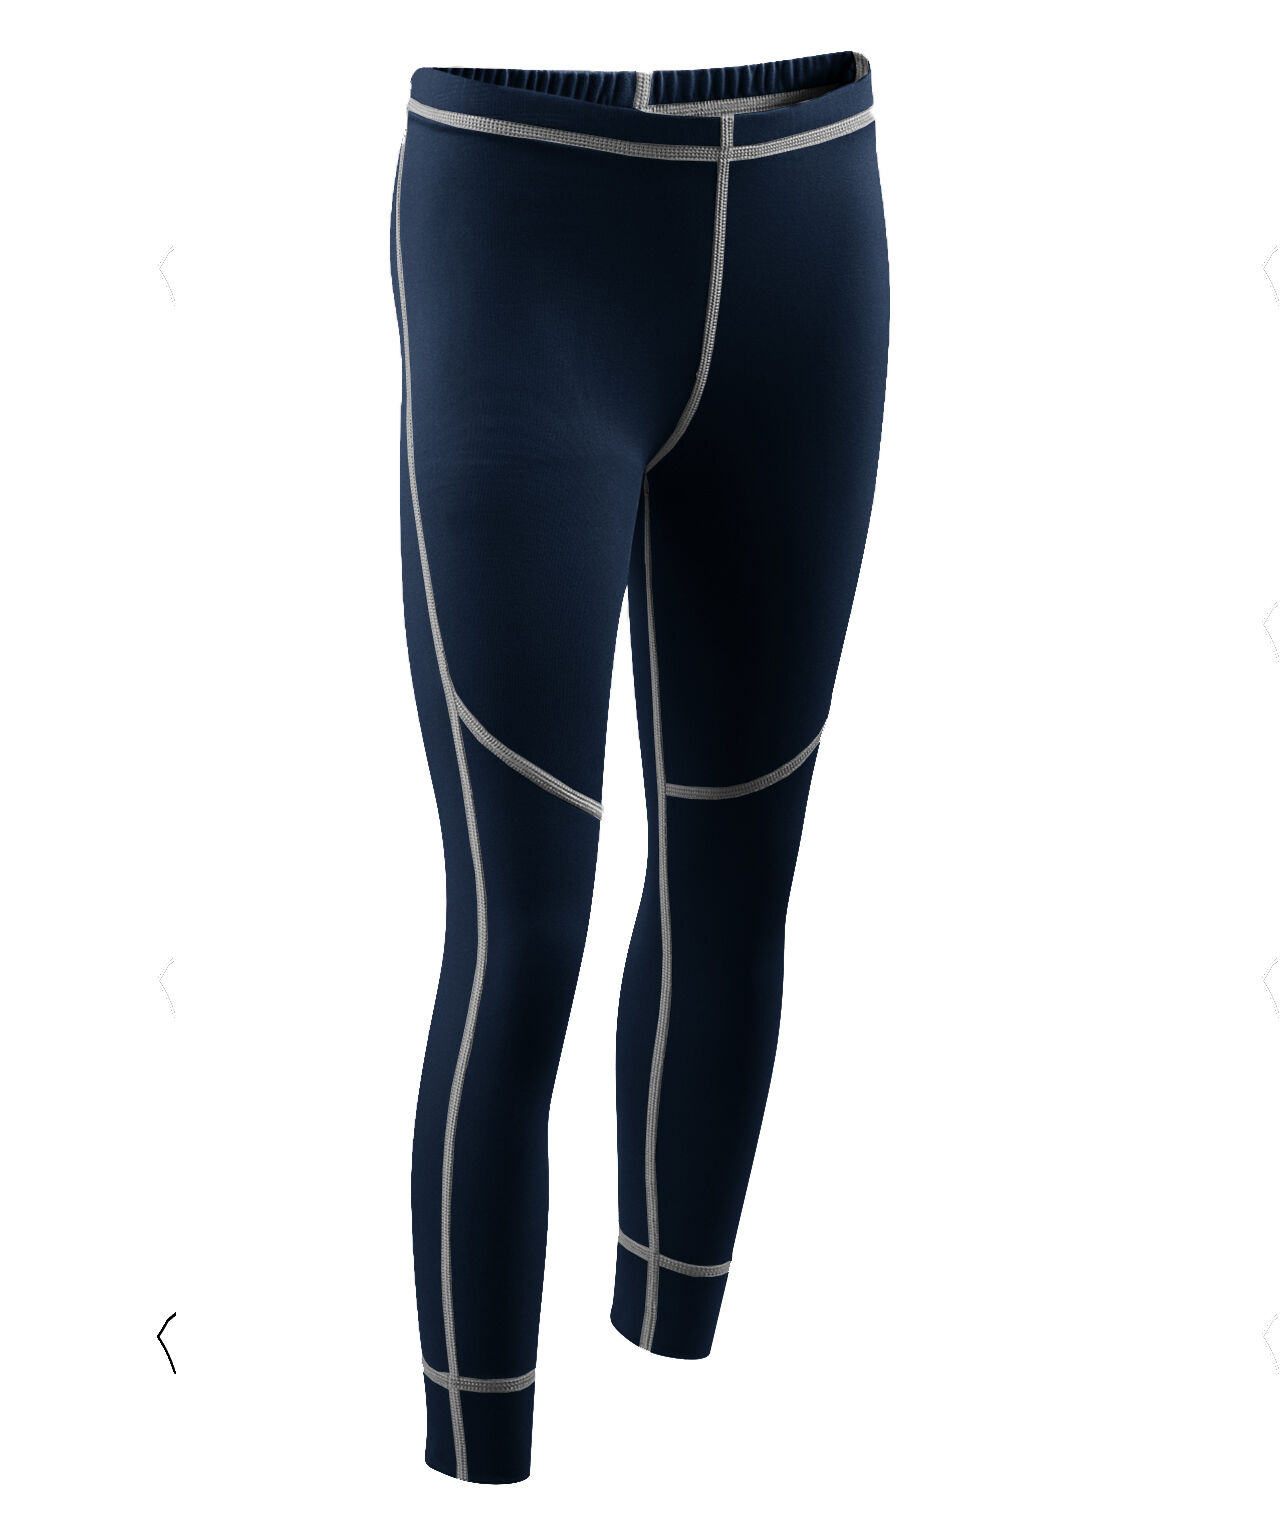 Damart Sport - Easy Body 4 - Running trousers - Kids